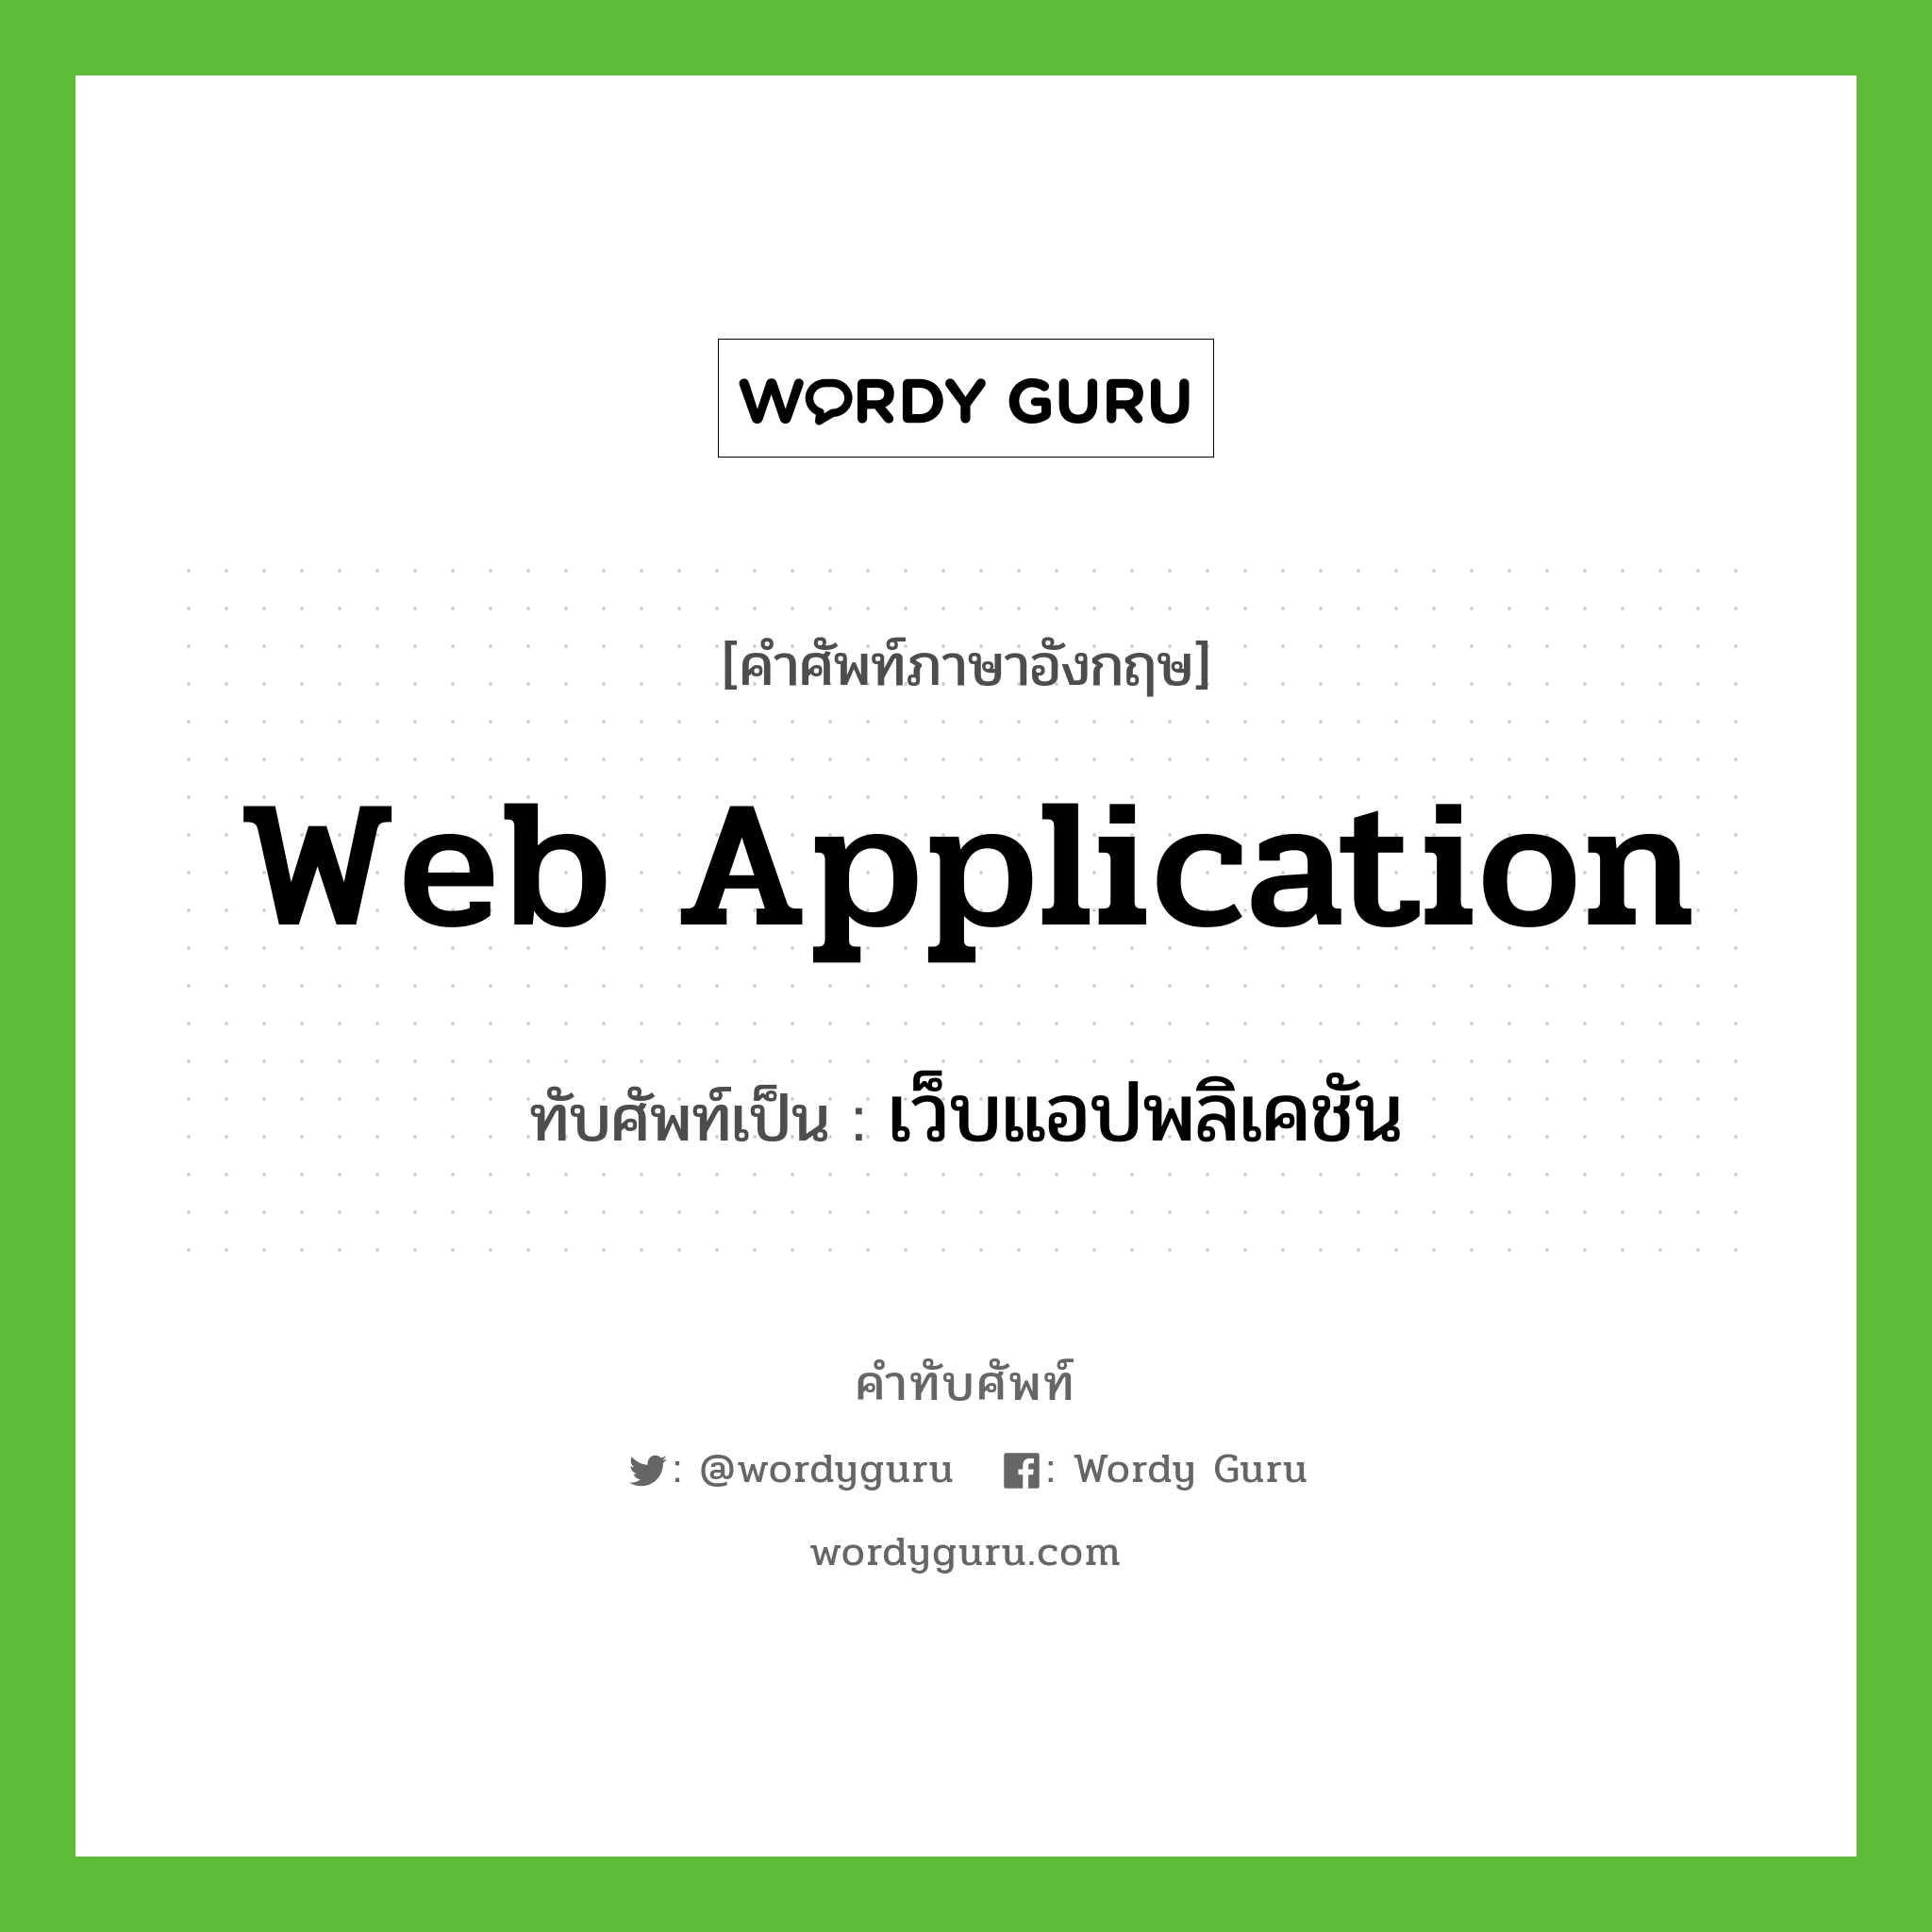 web application เขียนเป็นคำไทยว่าอะไร?, คำศัพท์ภาษาอังกฤษ web application ทับศัพท์เป็น เว็บแอปพลิเคชัน